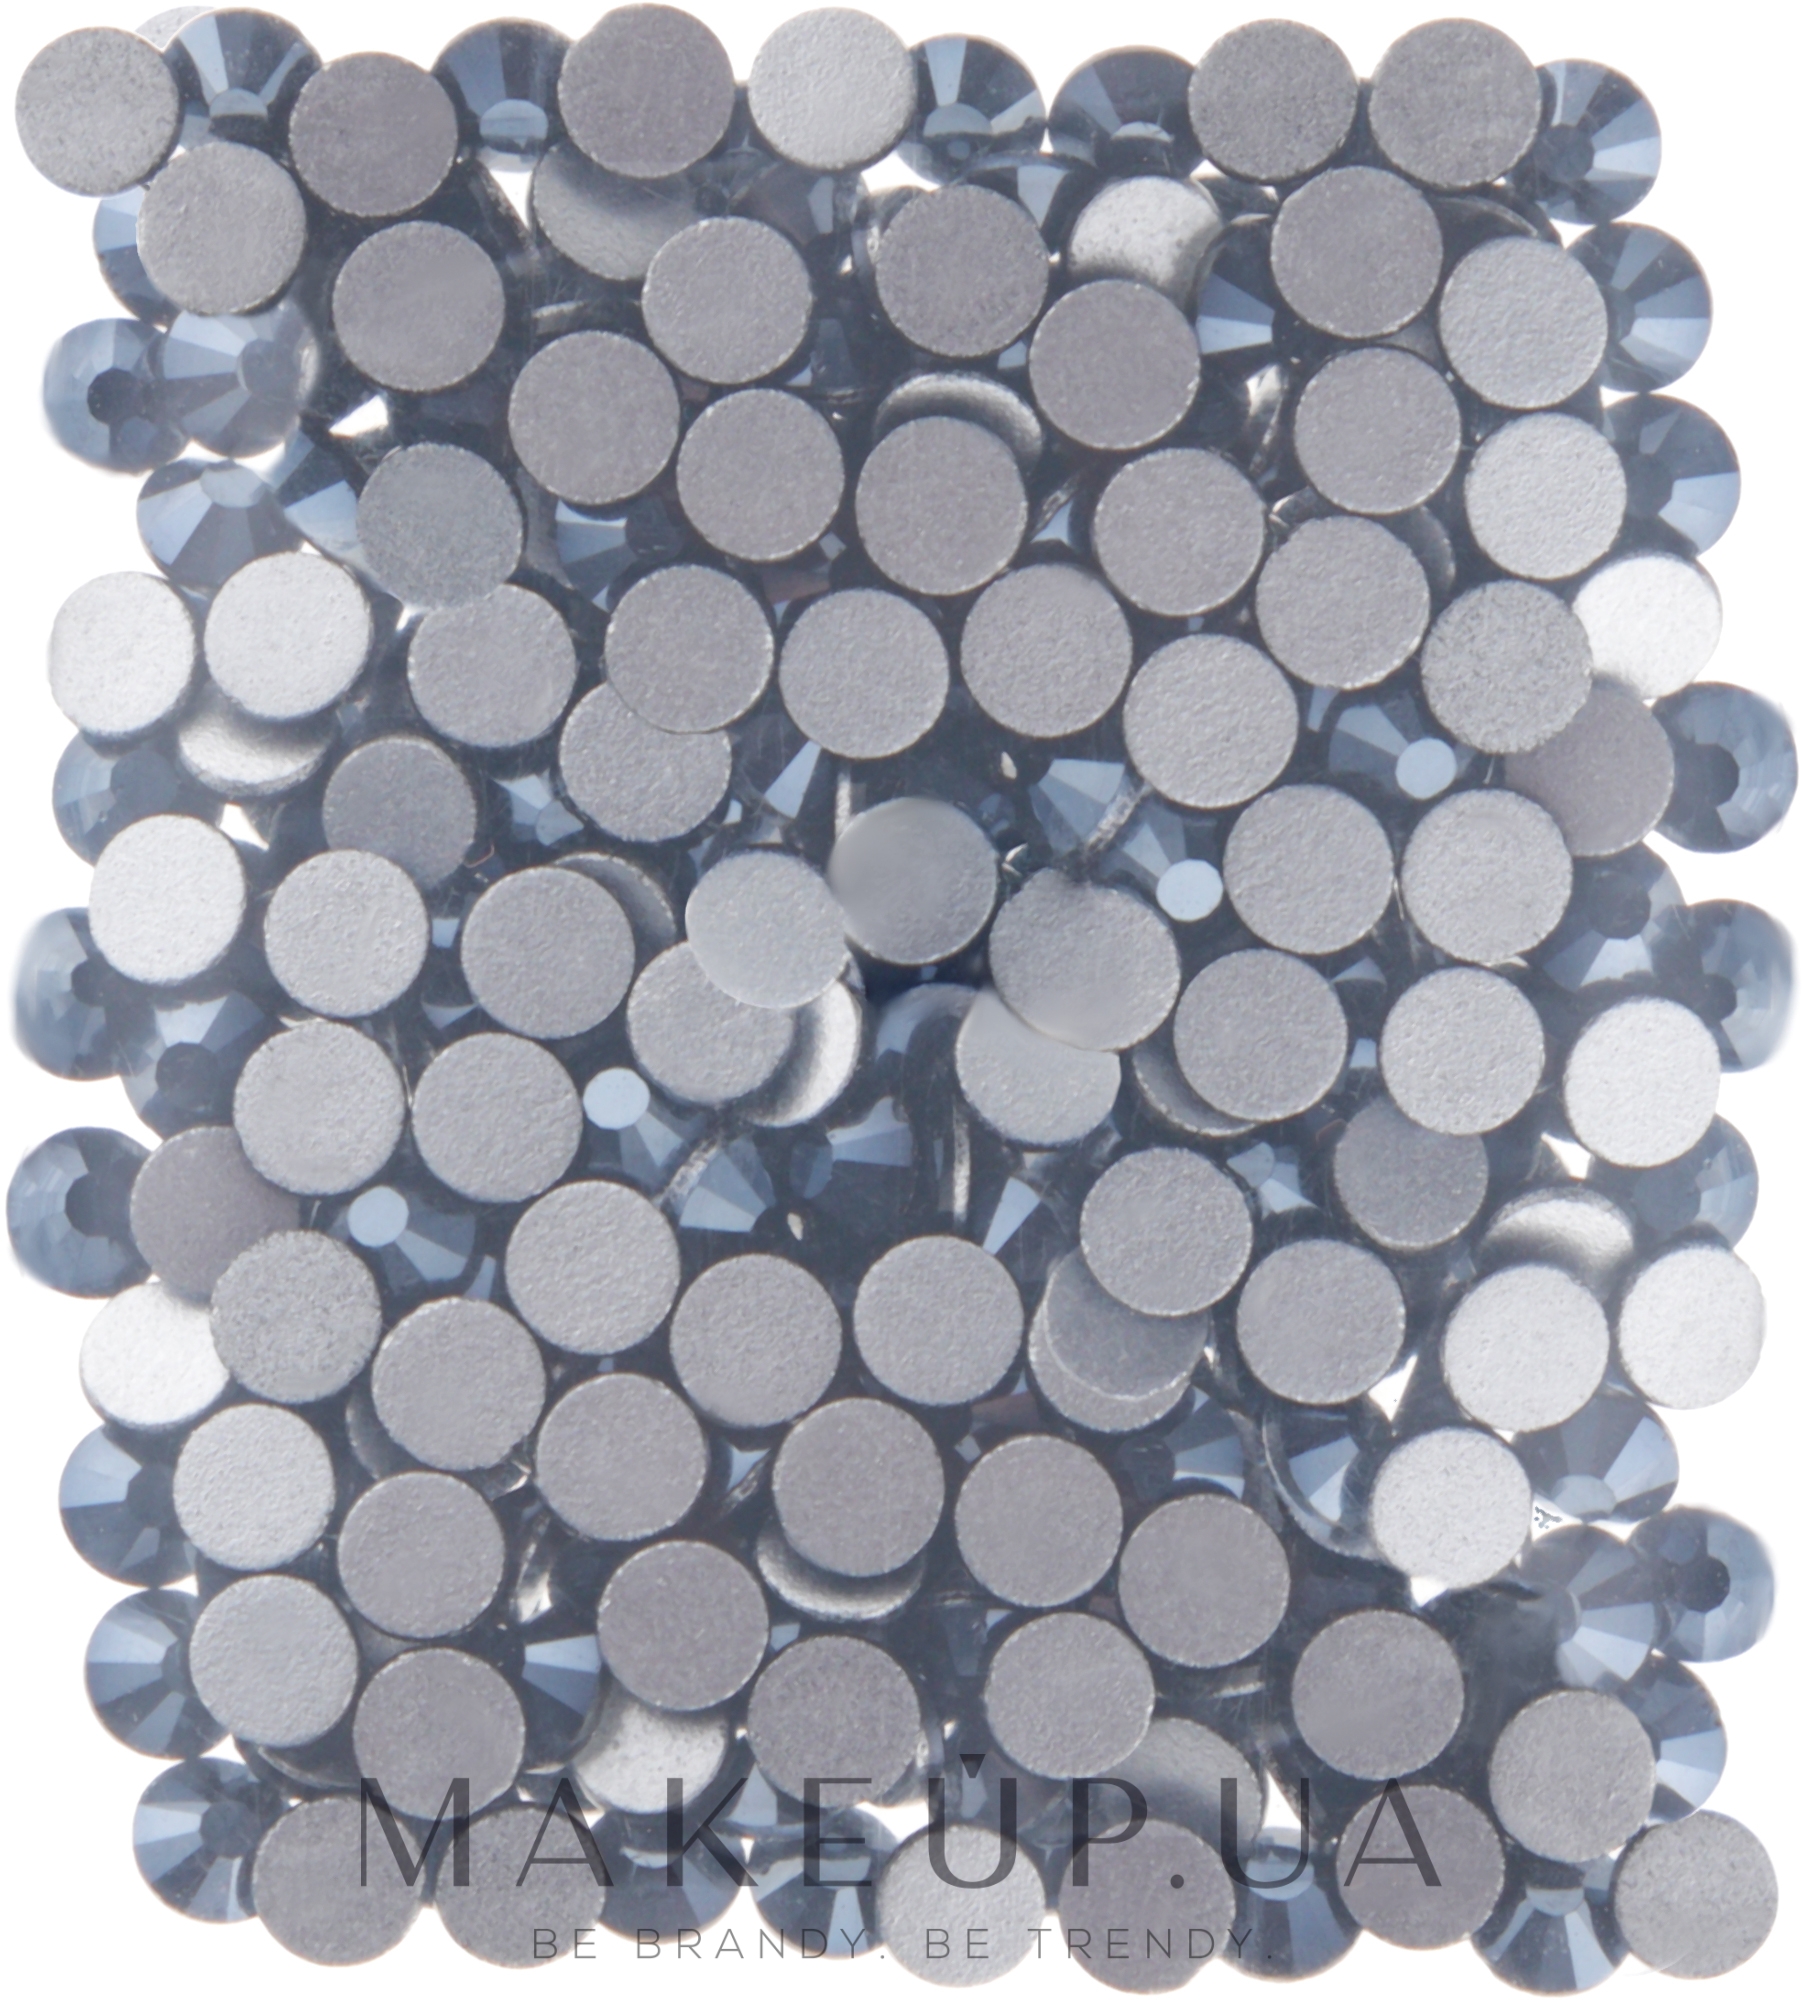 Декоративные кристаллы для ногтей "Jet Satin", размер SS 10, 200шт - Kodi Professional — фото 1уп